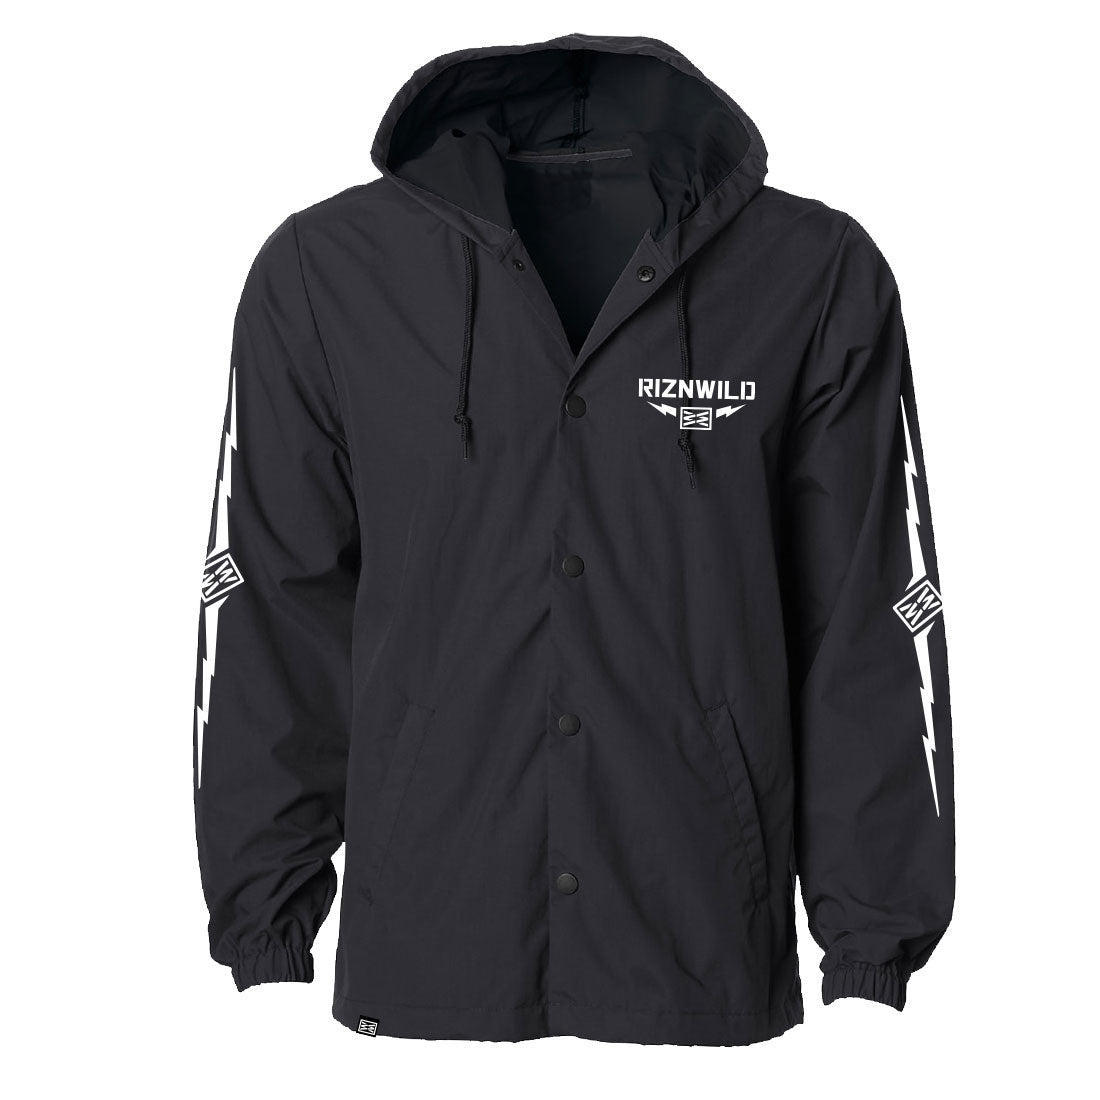 Thunder Water Resistant Hooded Windbreaker Jacket in Black